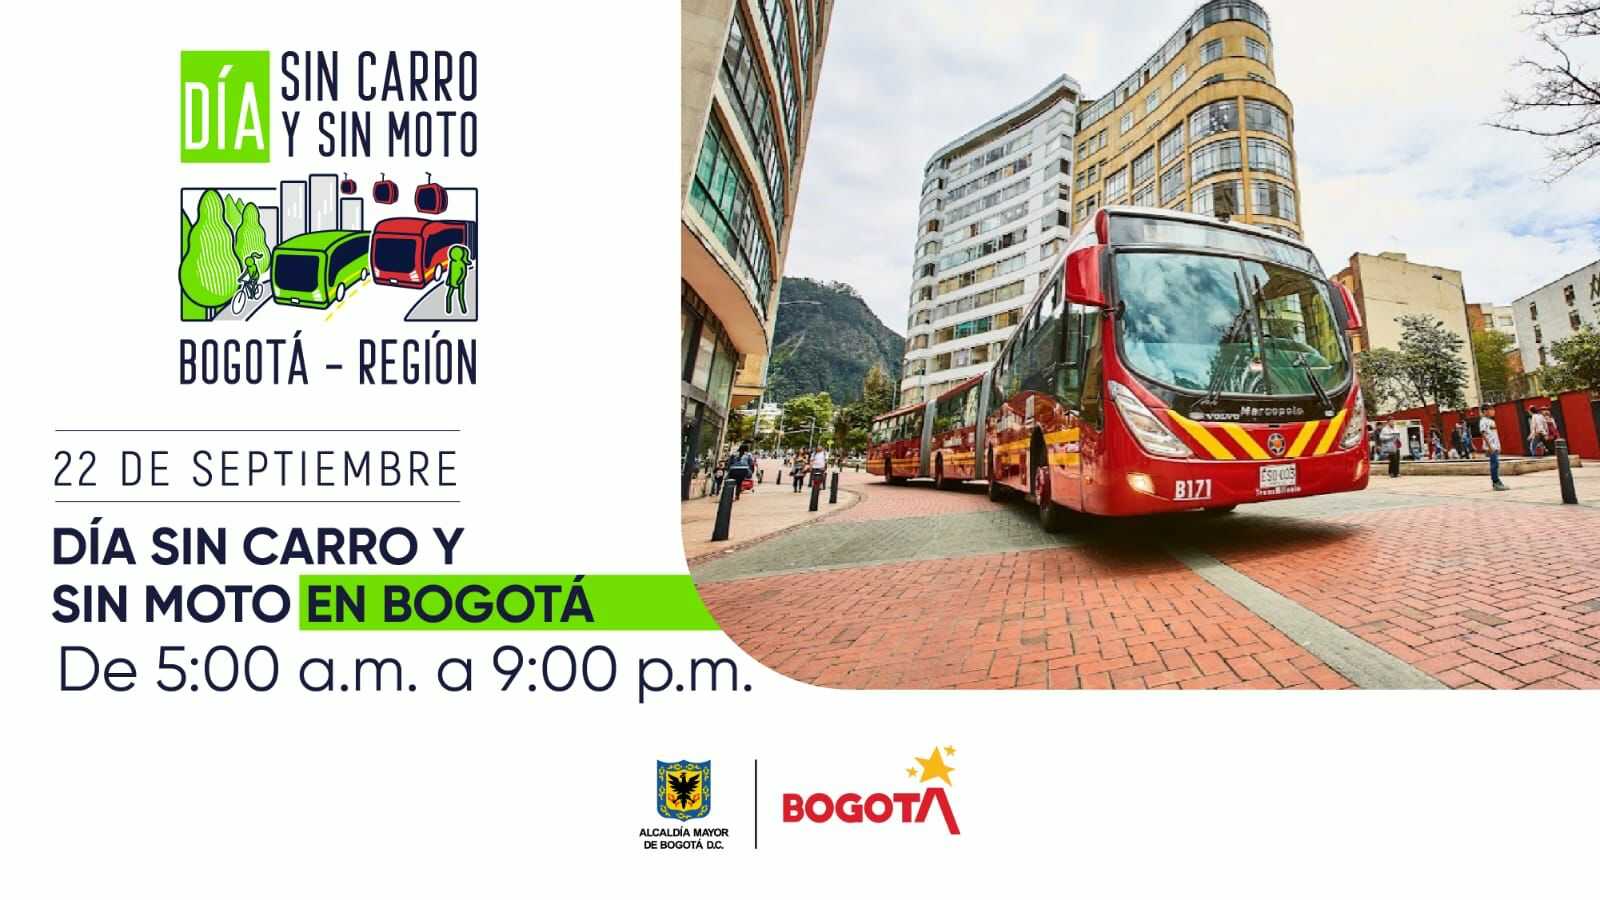 Día sin carro en Bogotá 22 de septiembre